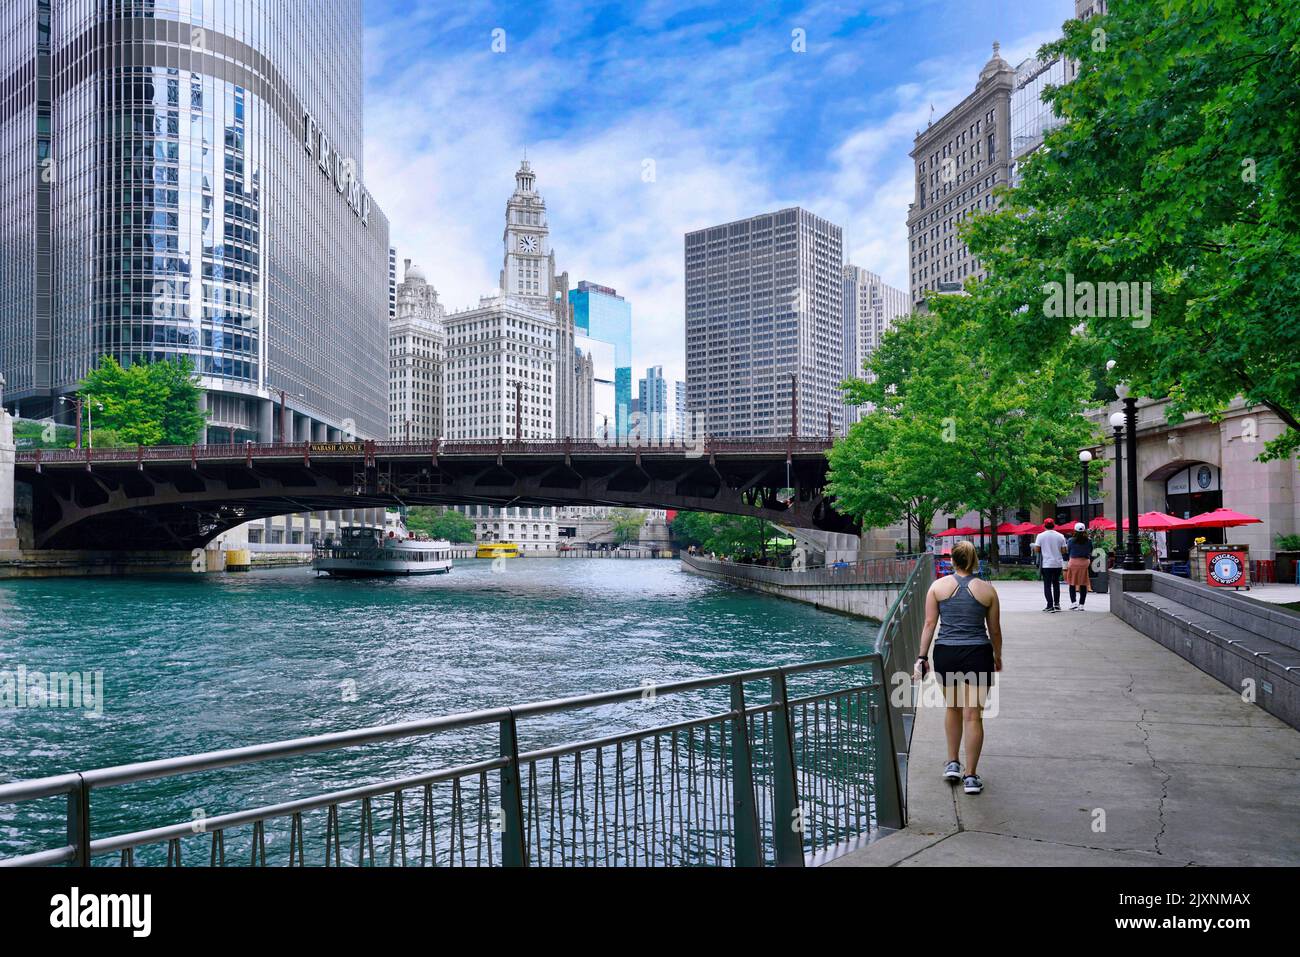 Der Riverwalk entlang des Chicago River verfügt über Bänke und Cafés und bietet Bewegung mit Blick auf die vielfältige Architektur. Stockfoto